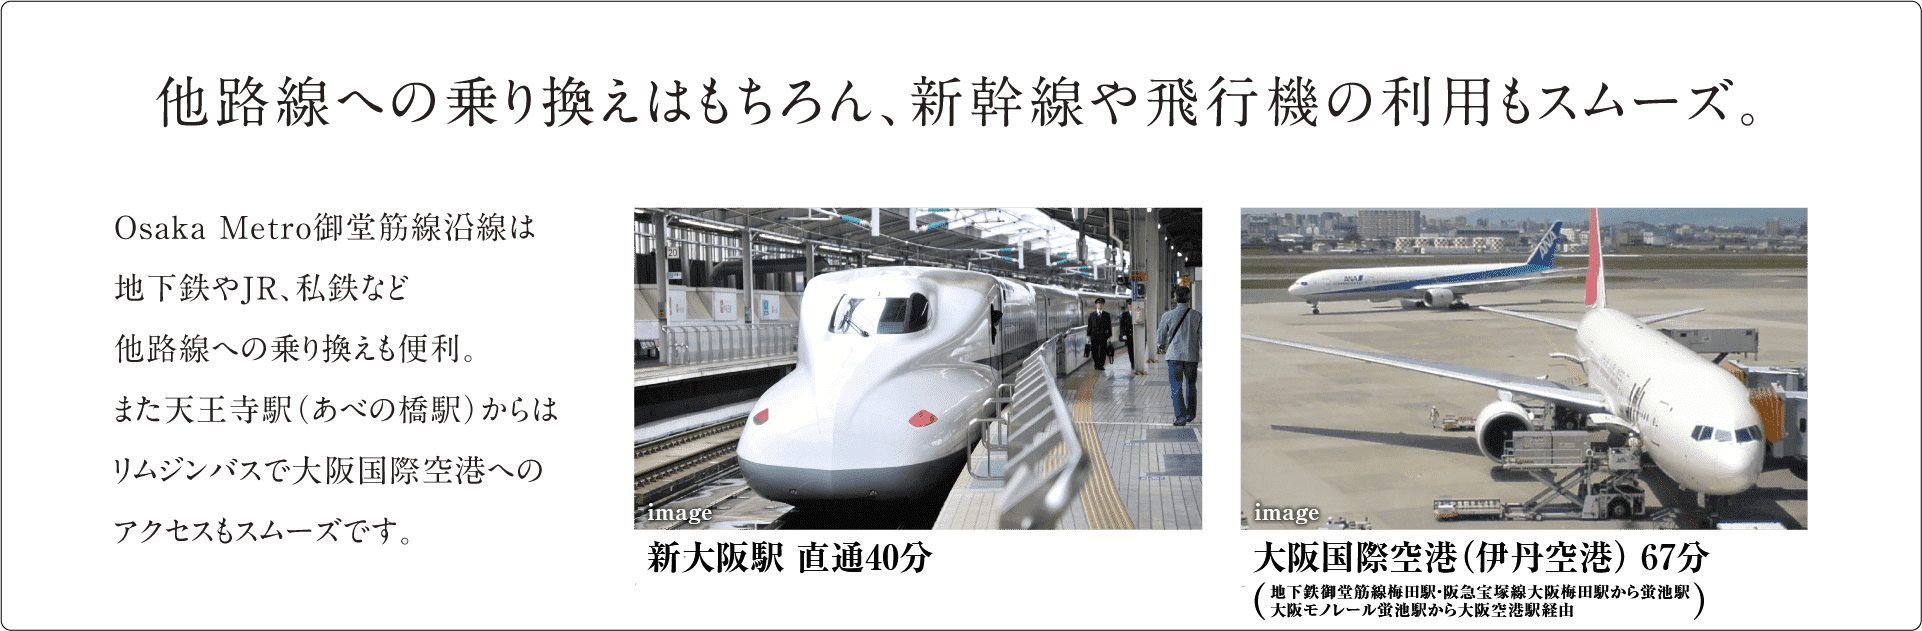 他路線への乗り換えはもちろん、新幹線や飛行機の利用もスムーズ。